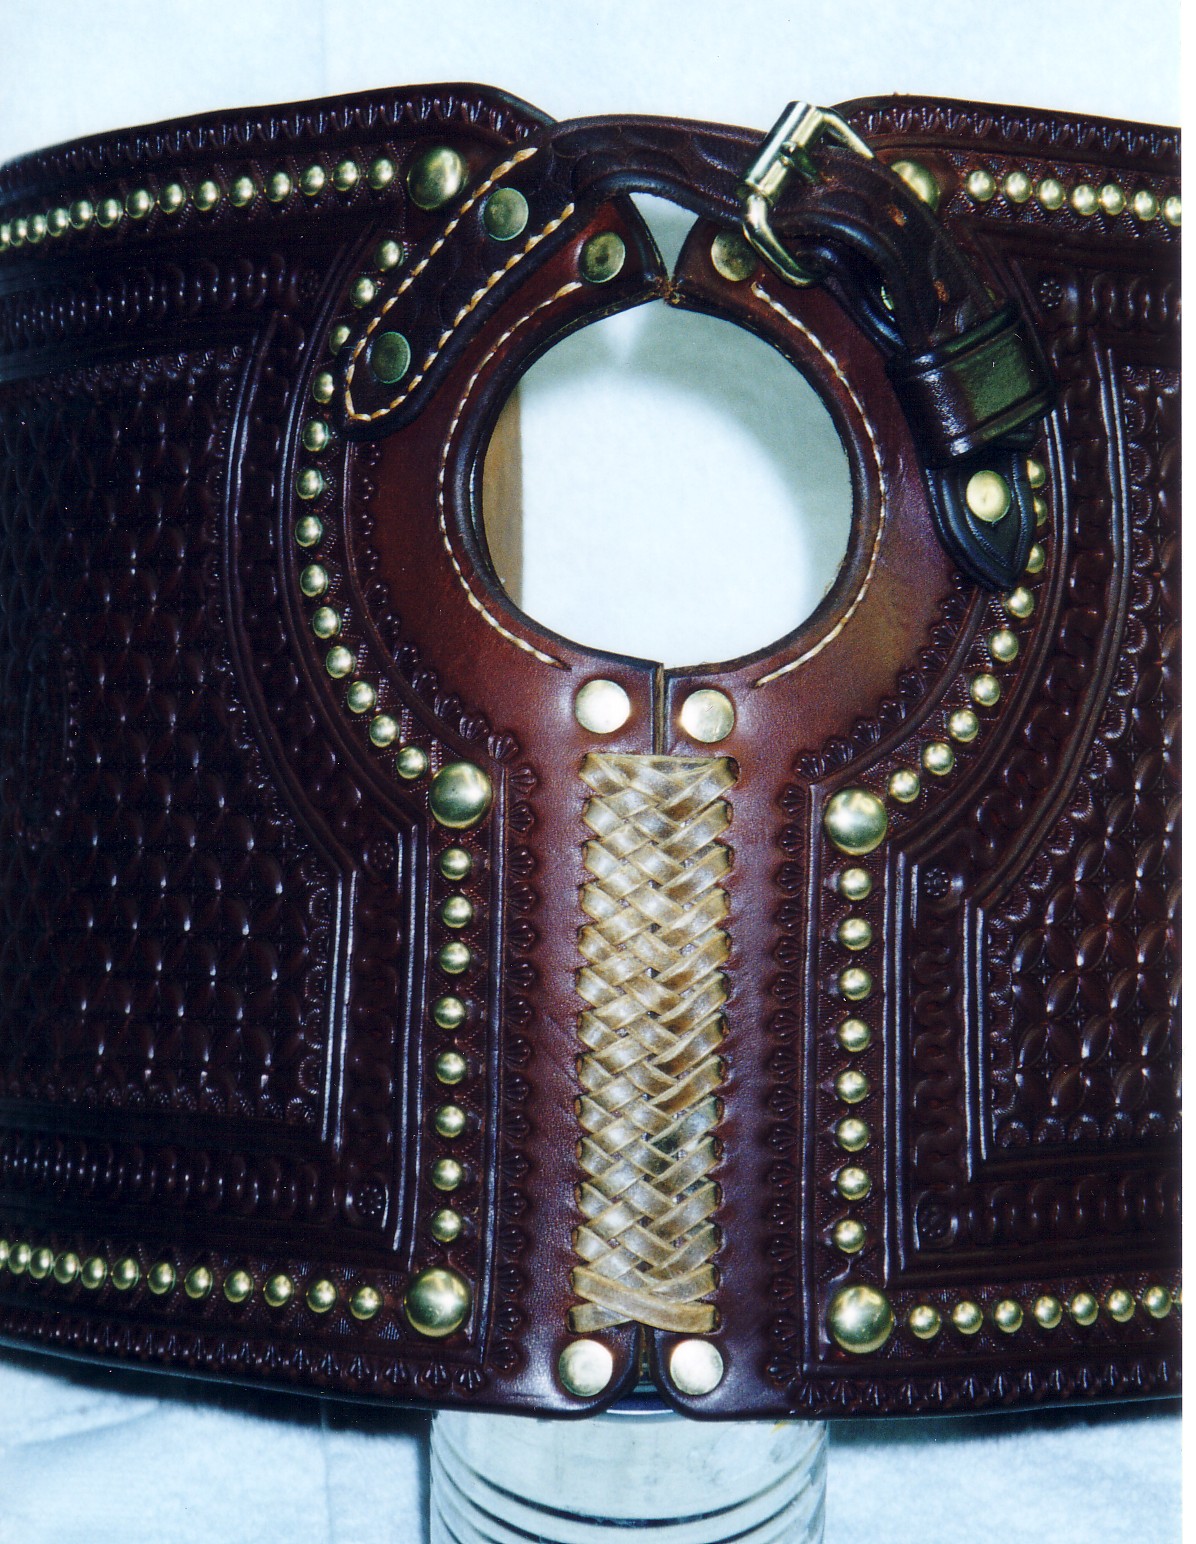 Leather Pommel Bags: Lepo Design